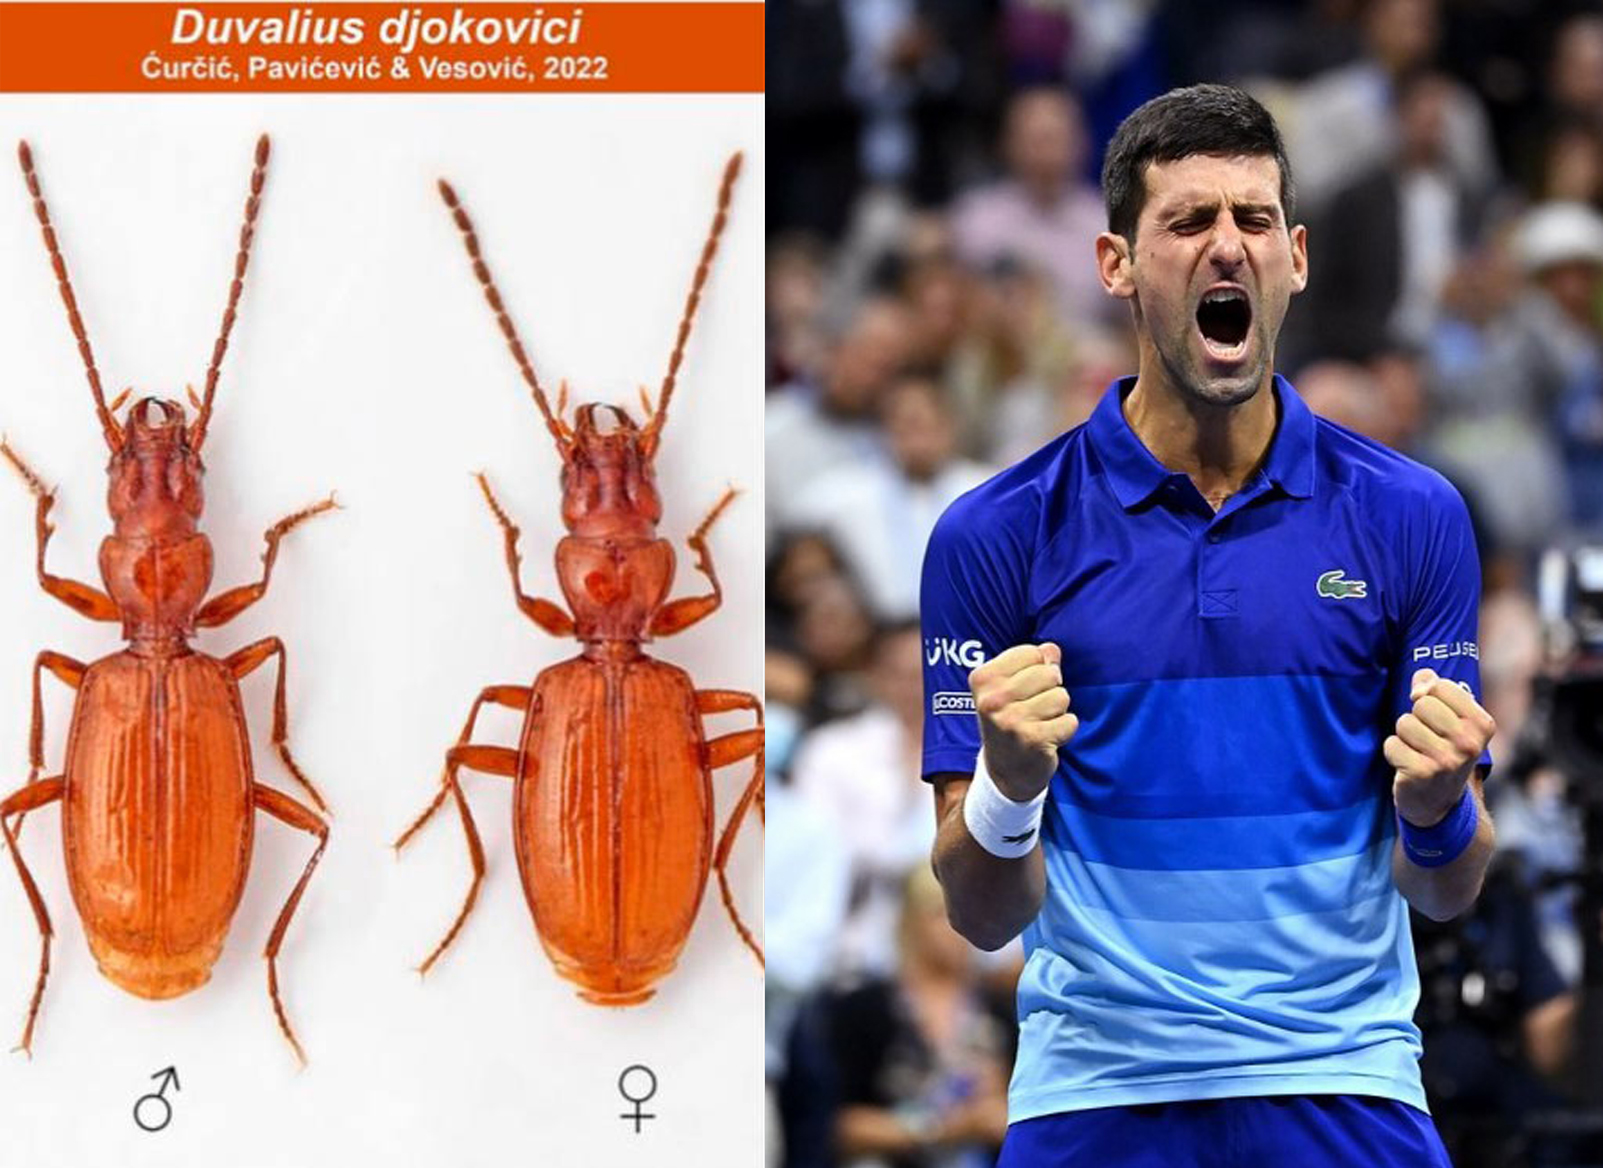 El insecto, recién descubierto en Serbia, llevará un nombre científico inspirado en Novak Djokovic. (Foto Prensa Libre: Redes Sociales)